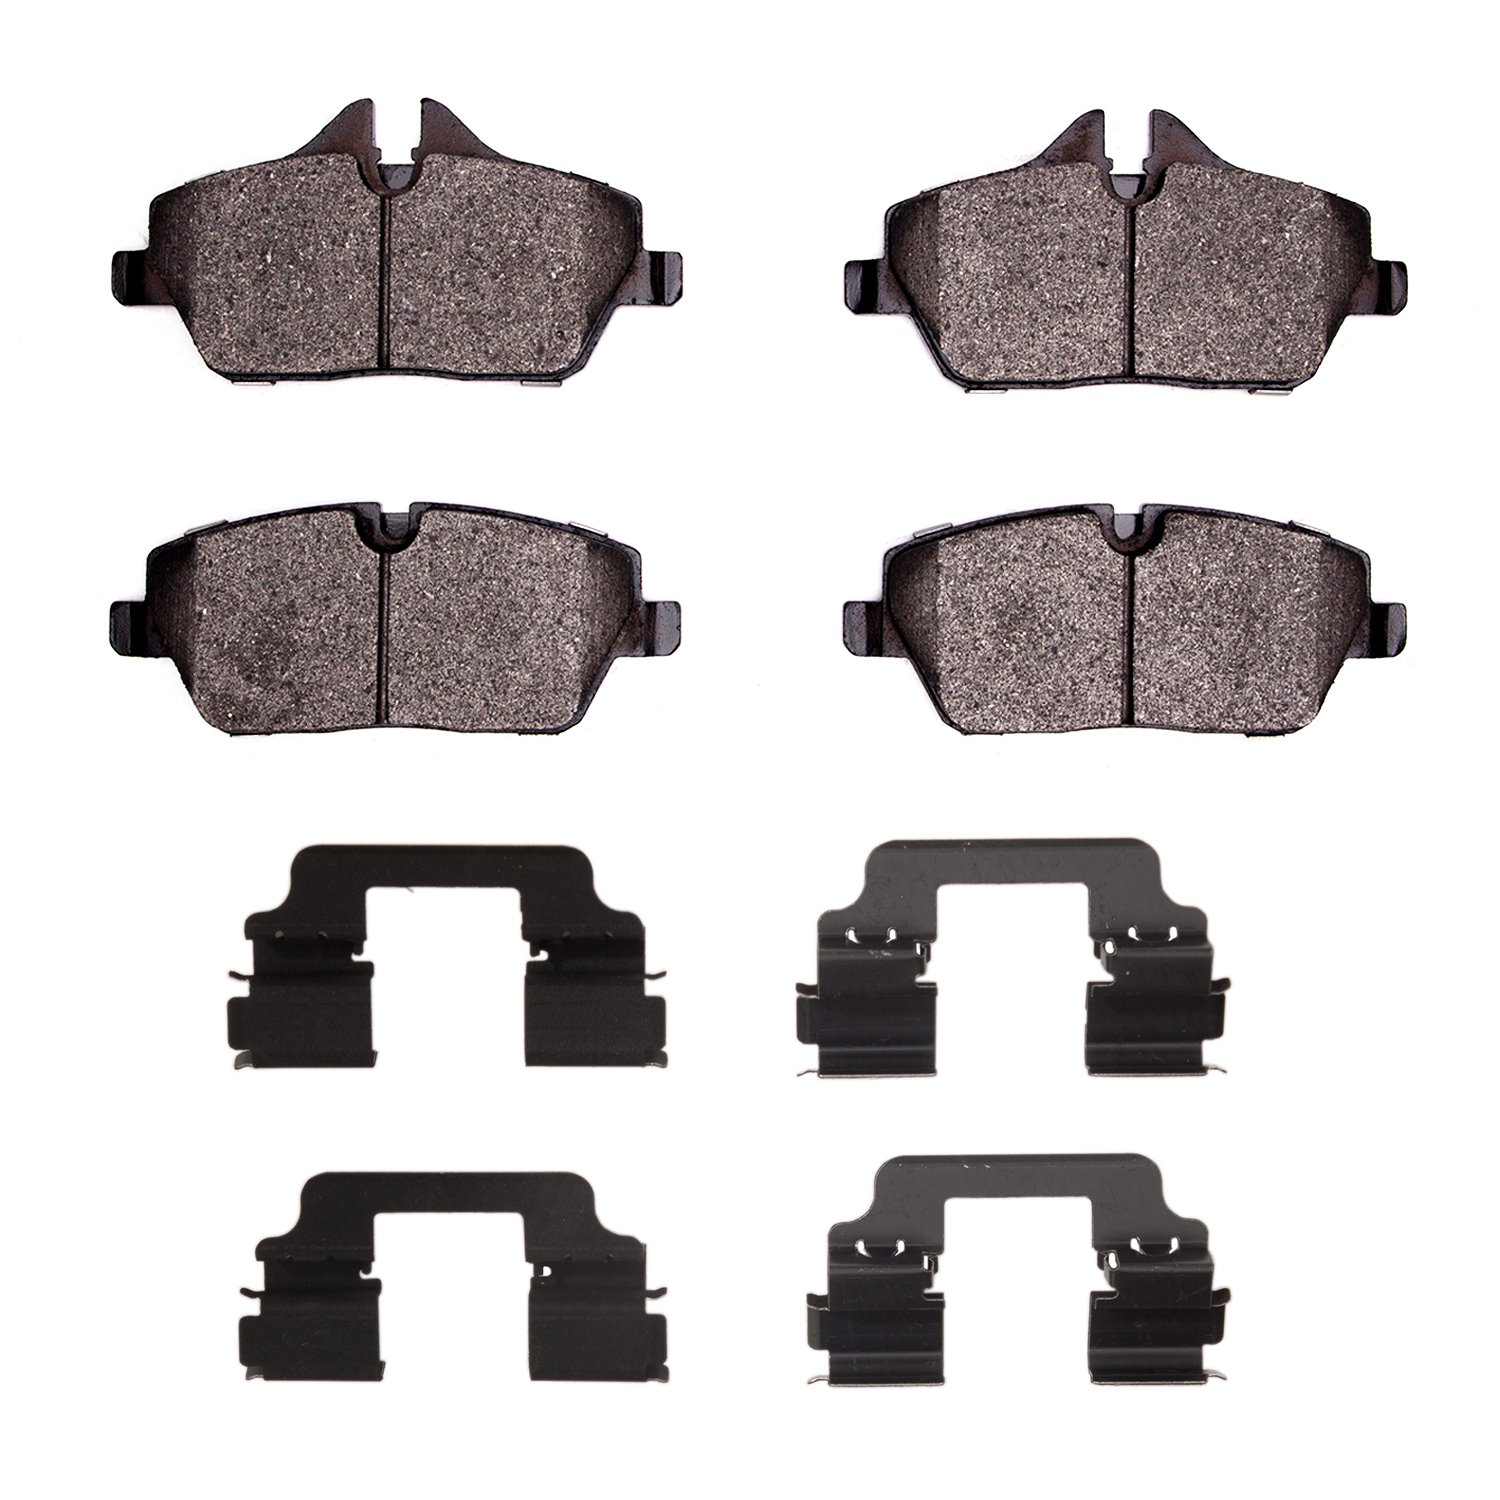 1311-1308-12 3000-Series Semi-Metallic Brake Pads & Hardware Kit, 2014-2021 BMW, Position: Front